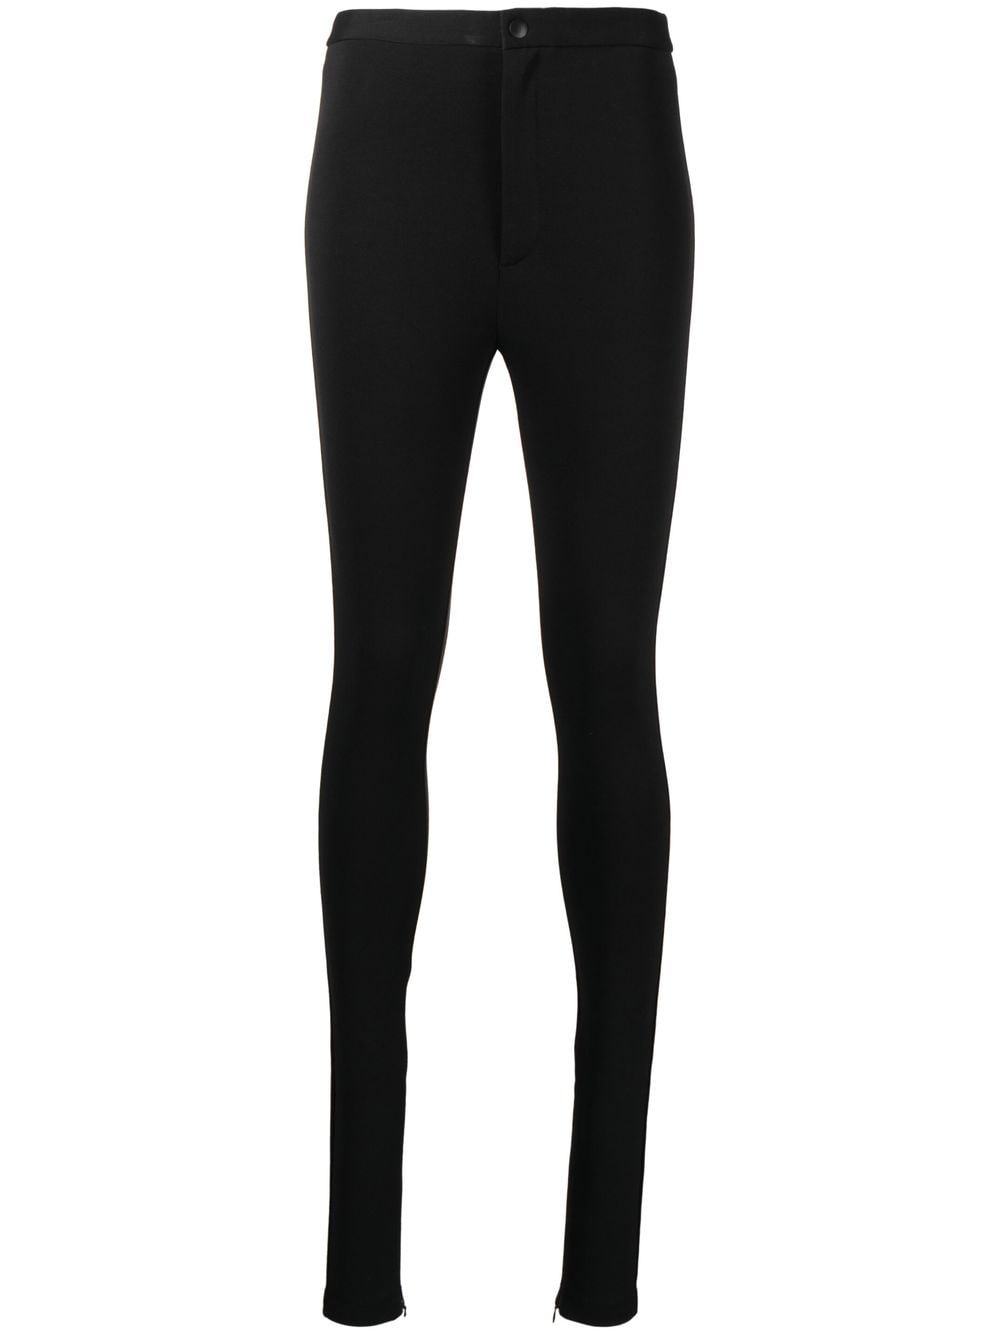 Black high-waist skinny leggings - women